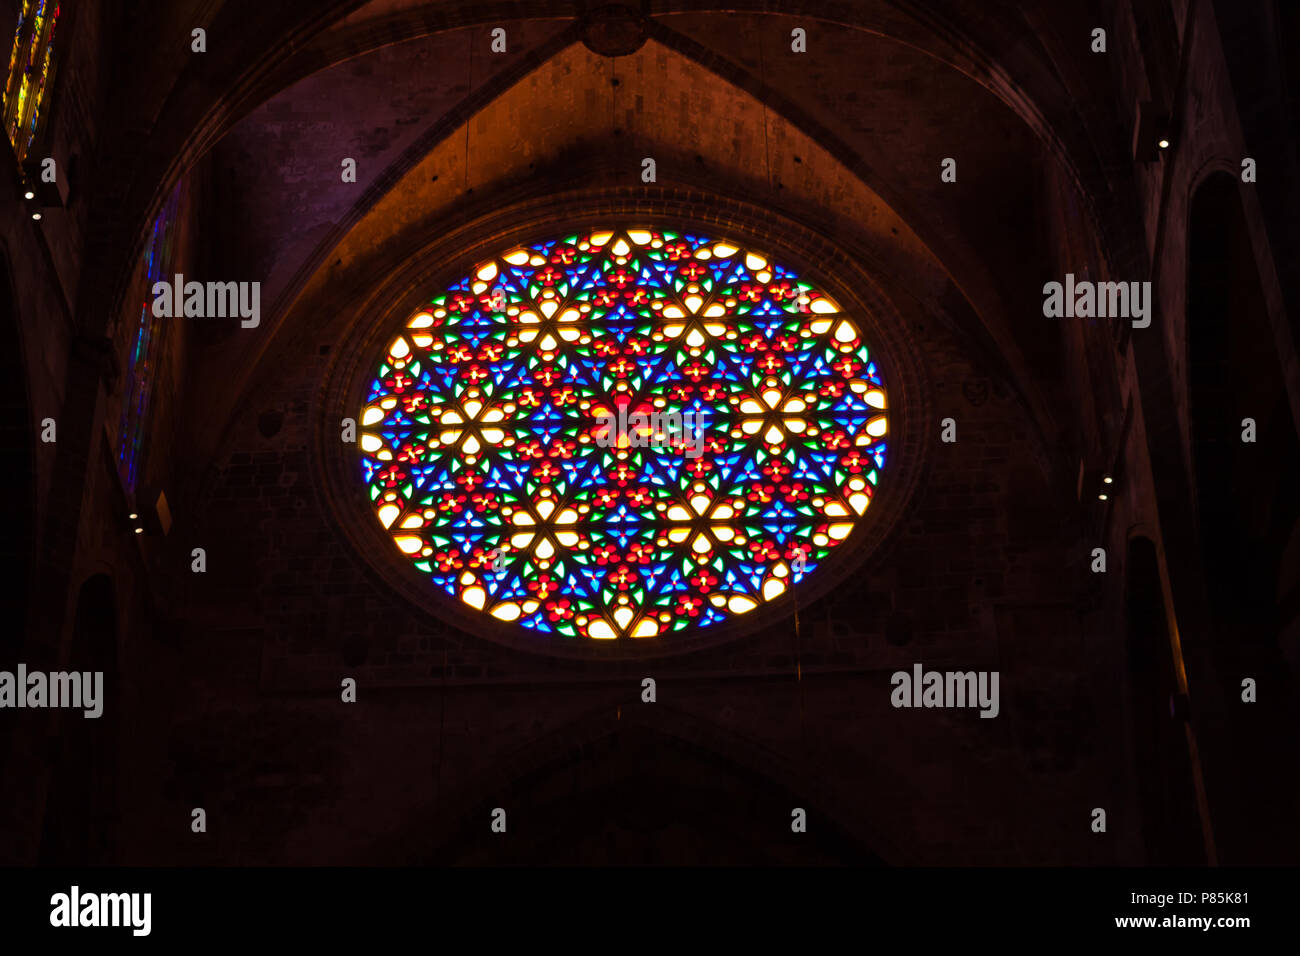 PALMA DI MALLORCA, Spagna - 23 giugno 2018: rosone nella Cattedrale di Santa Maria di Palma, noto anche come La Seu. Palma di Maiorca, SPAGNA Foto Stock